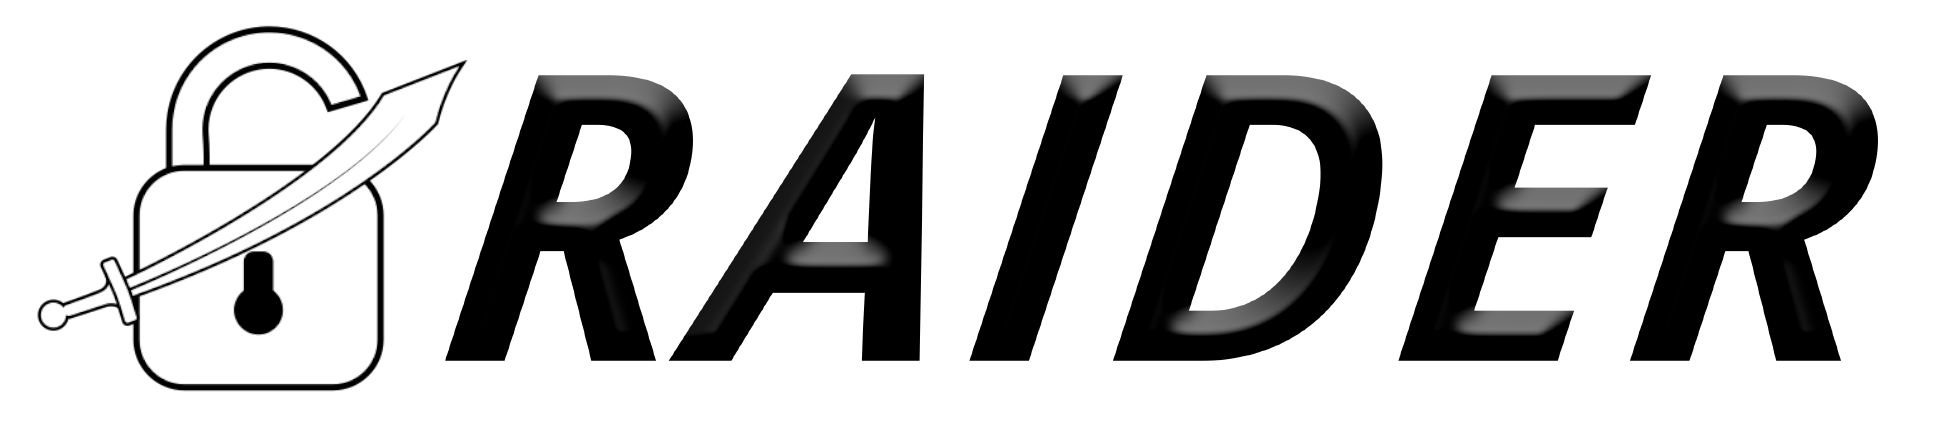 Raider logo